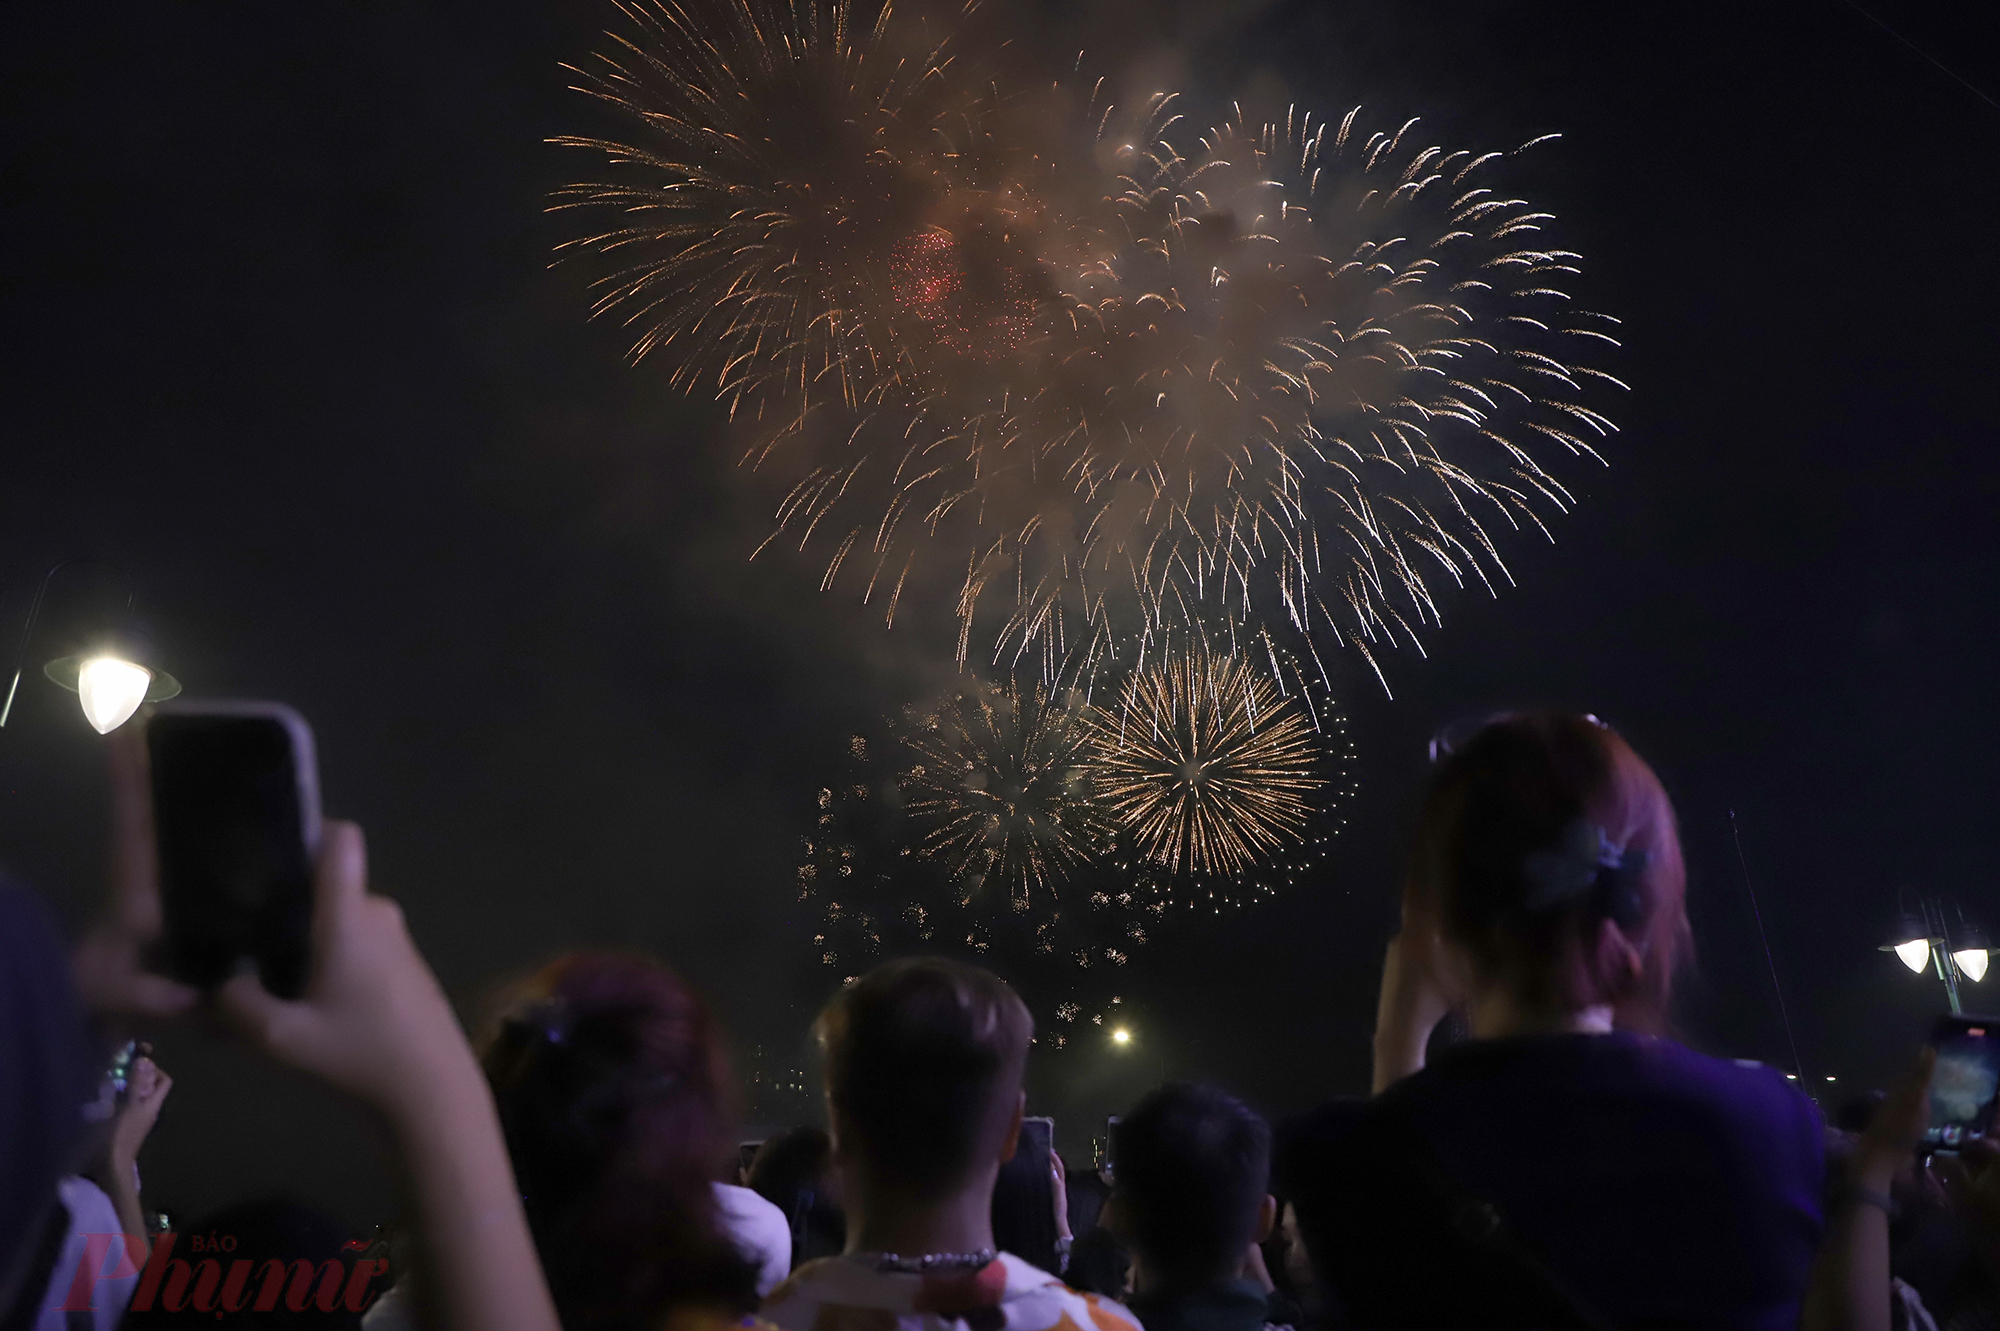 Đúng 0h ngày Mùng 1 tết Quý Mão, loạt pháo hoa được bắn trên bầu trời TPHCM chào đón năm mới